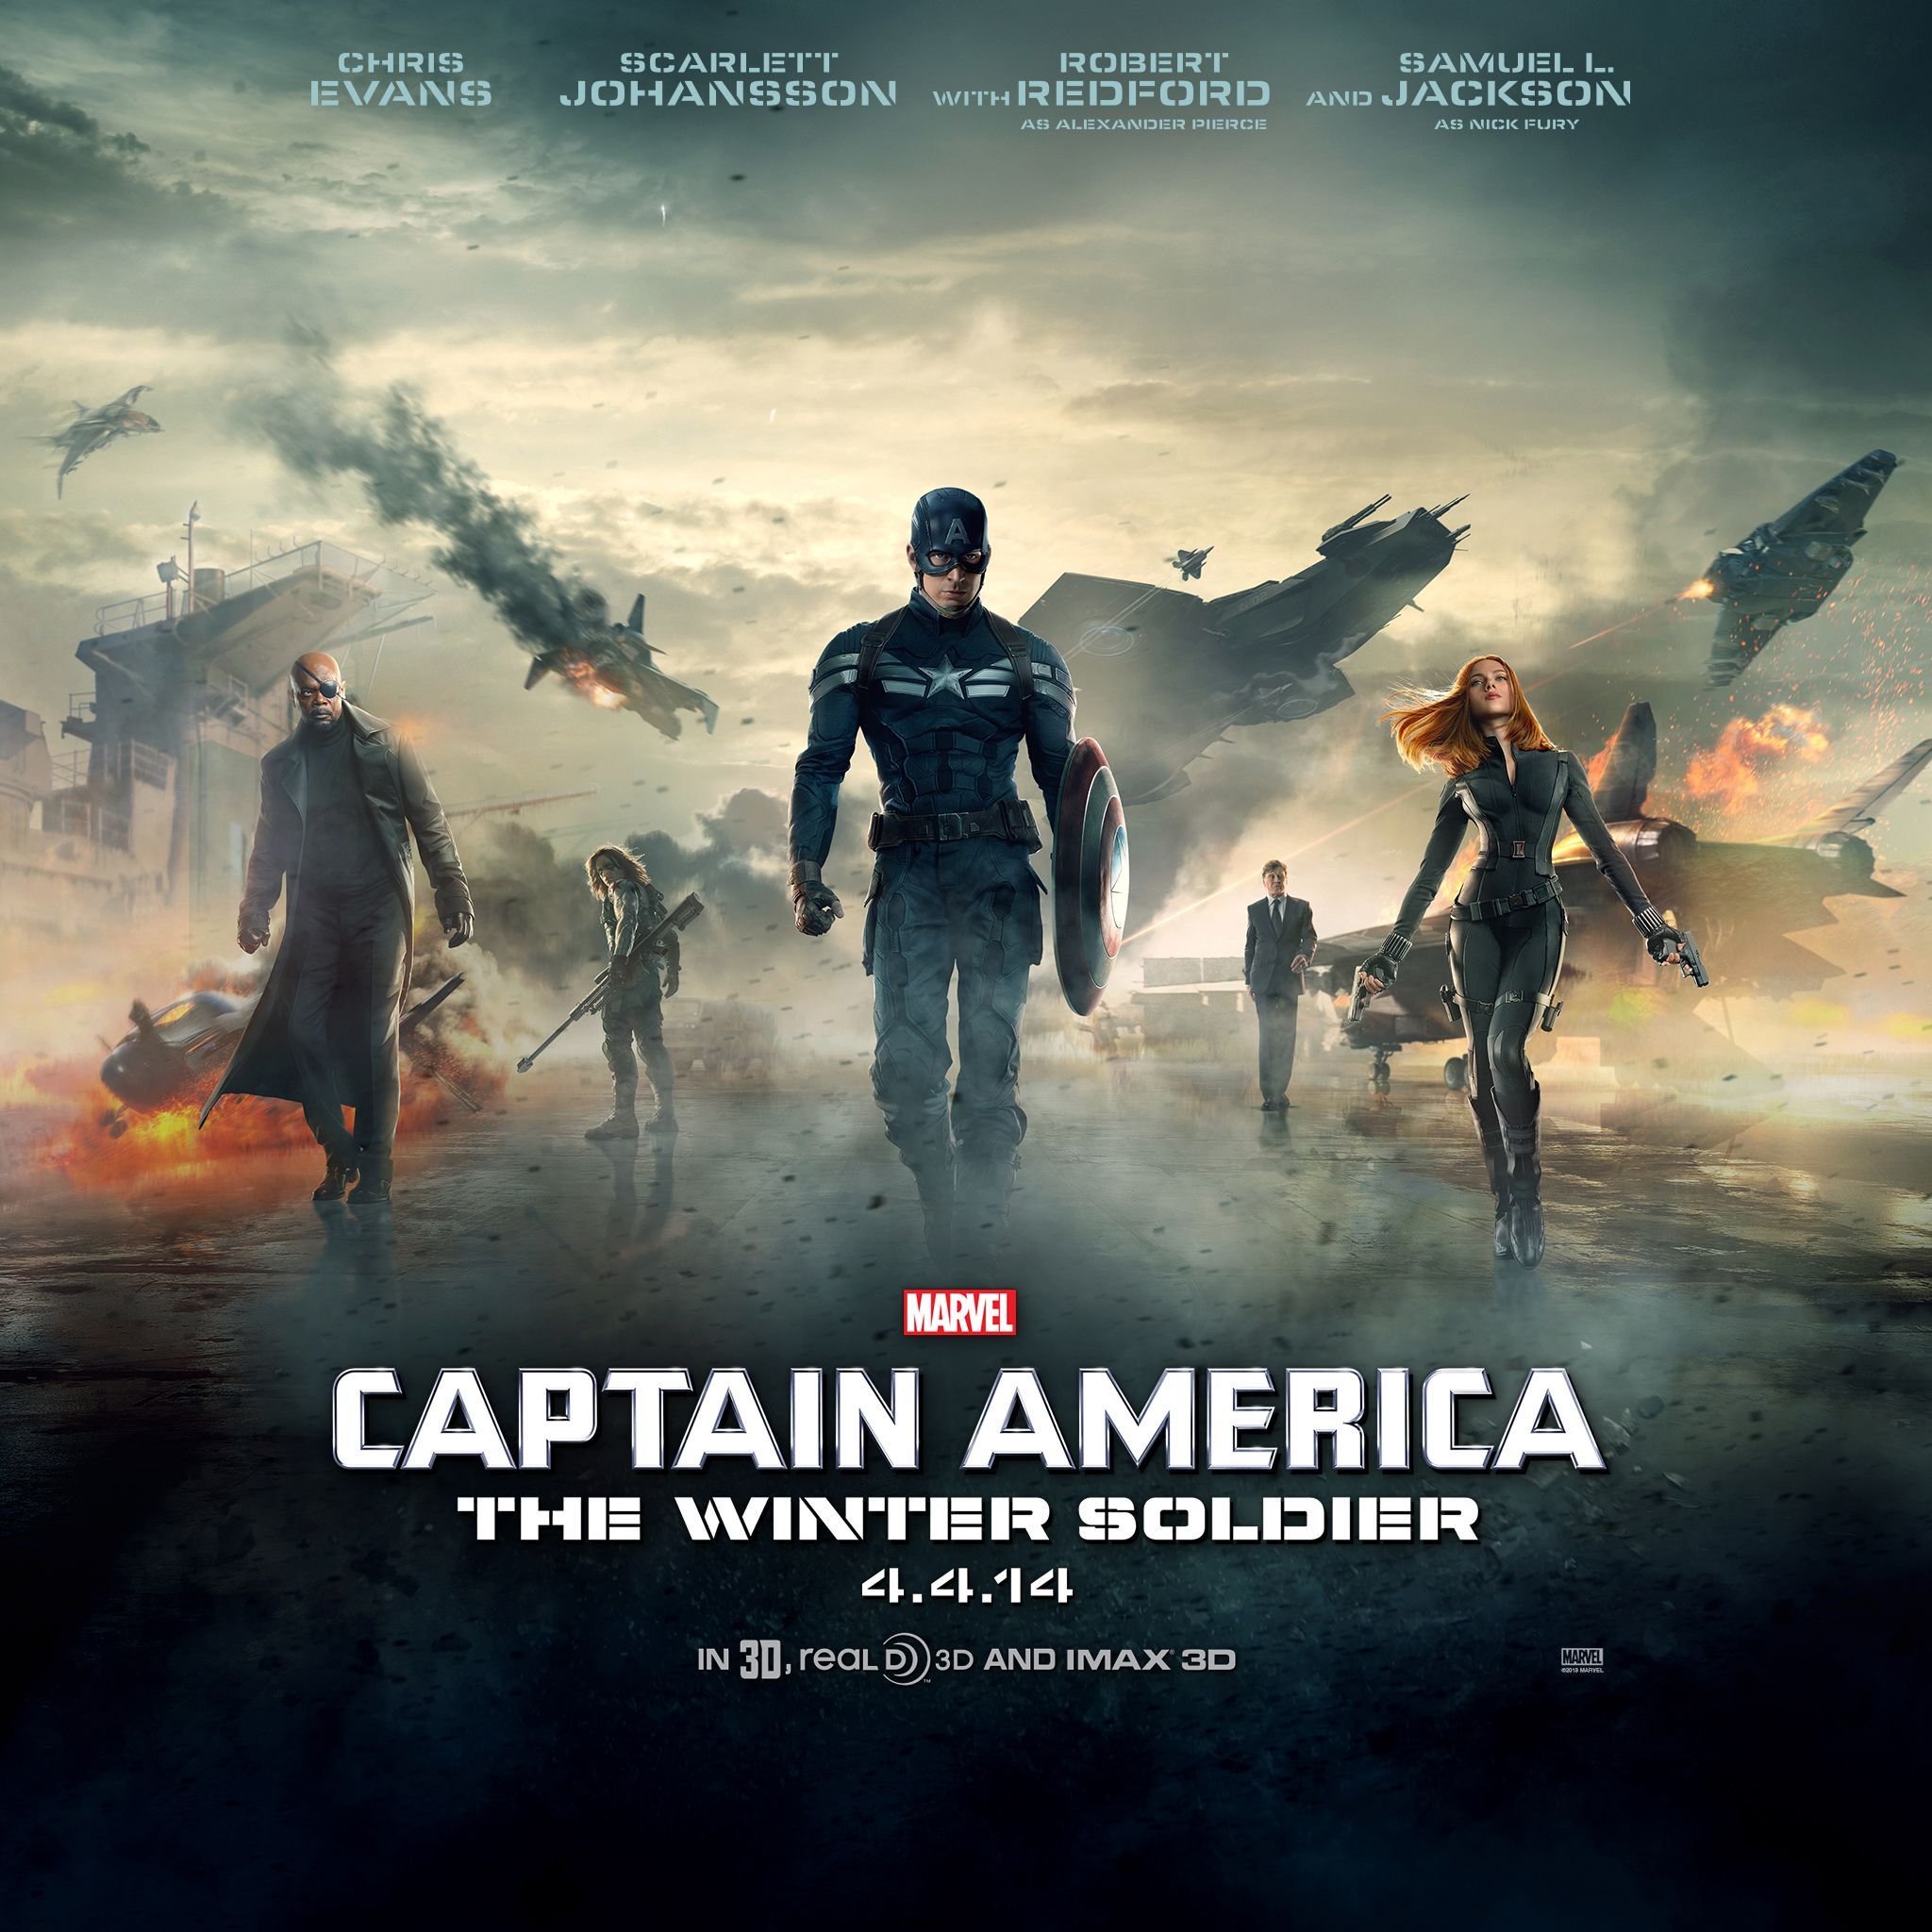 Get Scarlett Johanssons poster / wallpaper for Captain America 2